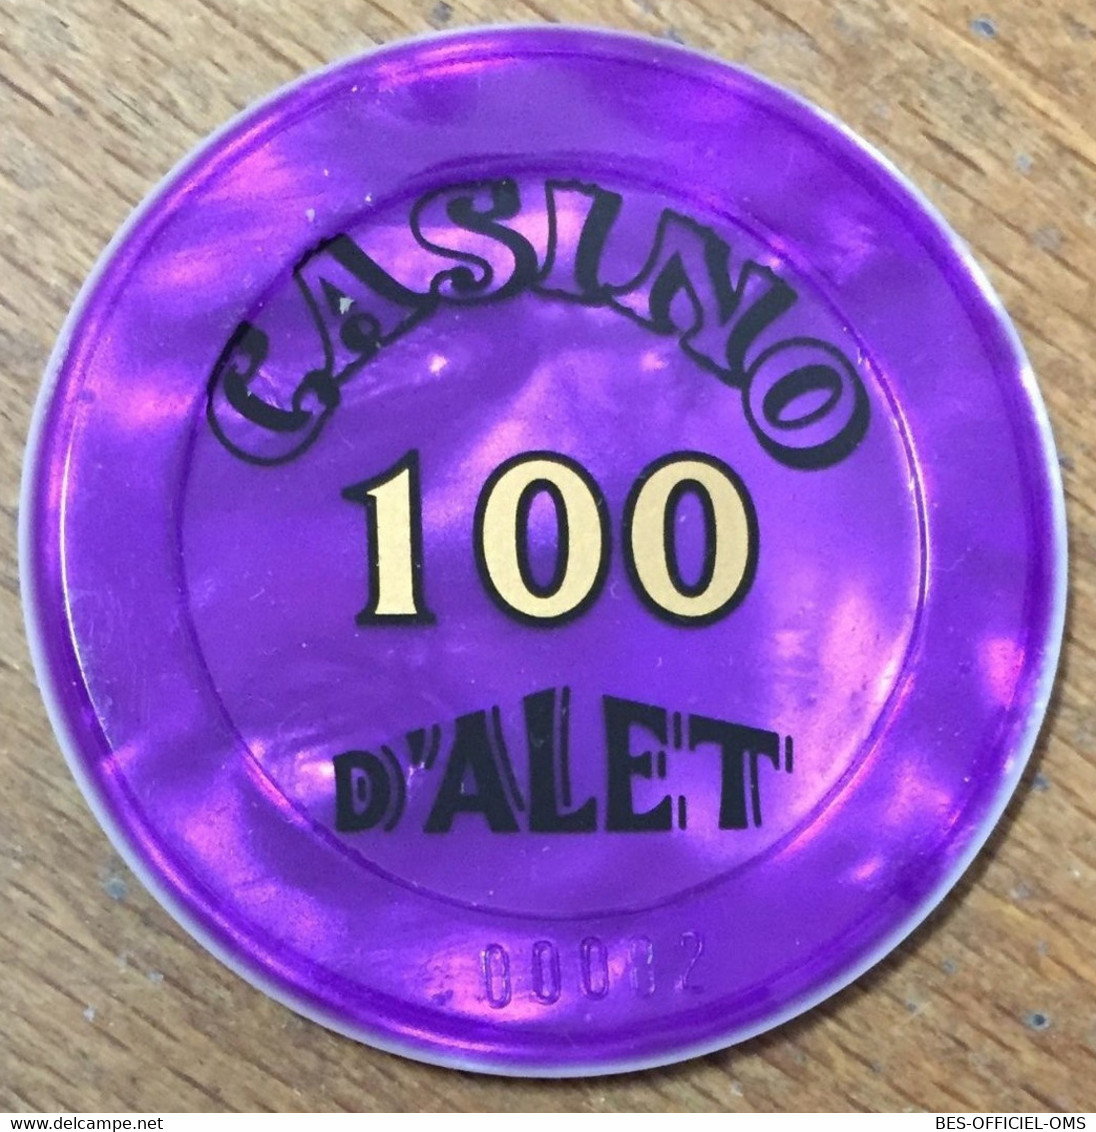 11 ALET-LES-BAINS CASINO D'ALET JETON DE 100 FRANCS N°00073 CHIP TOKENS COINS - Casino